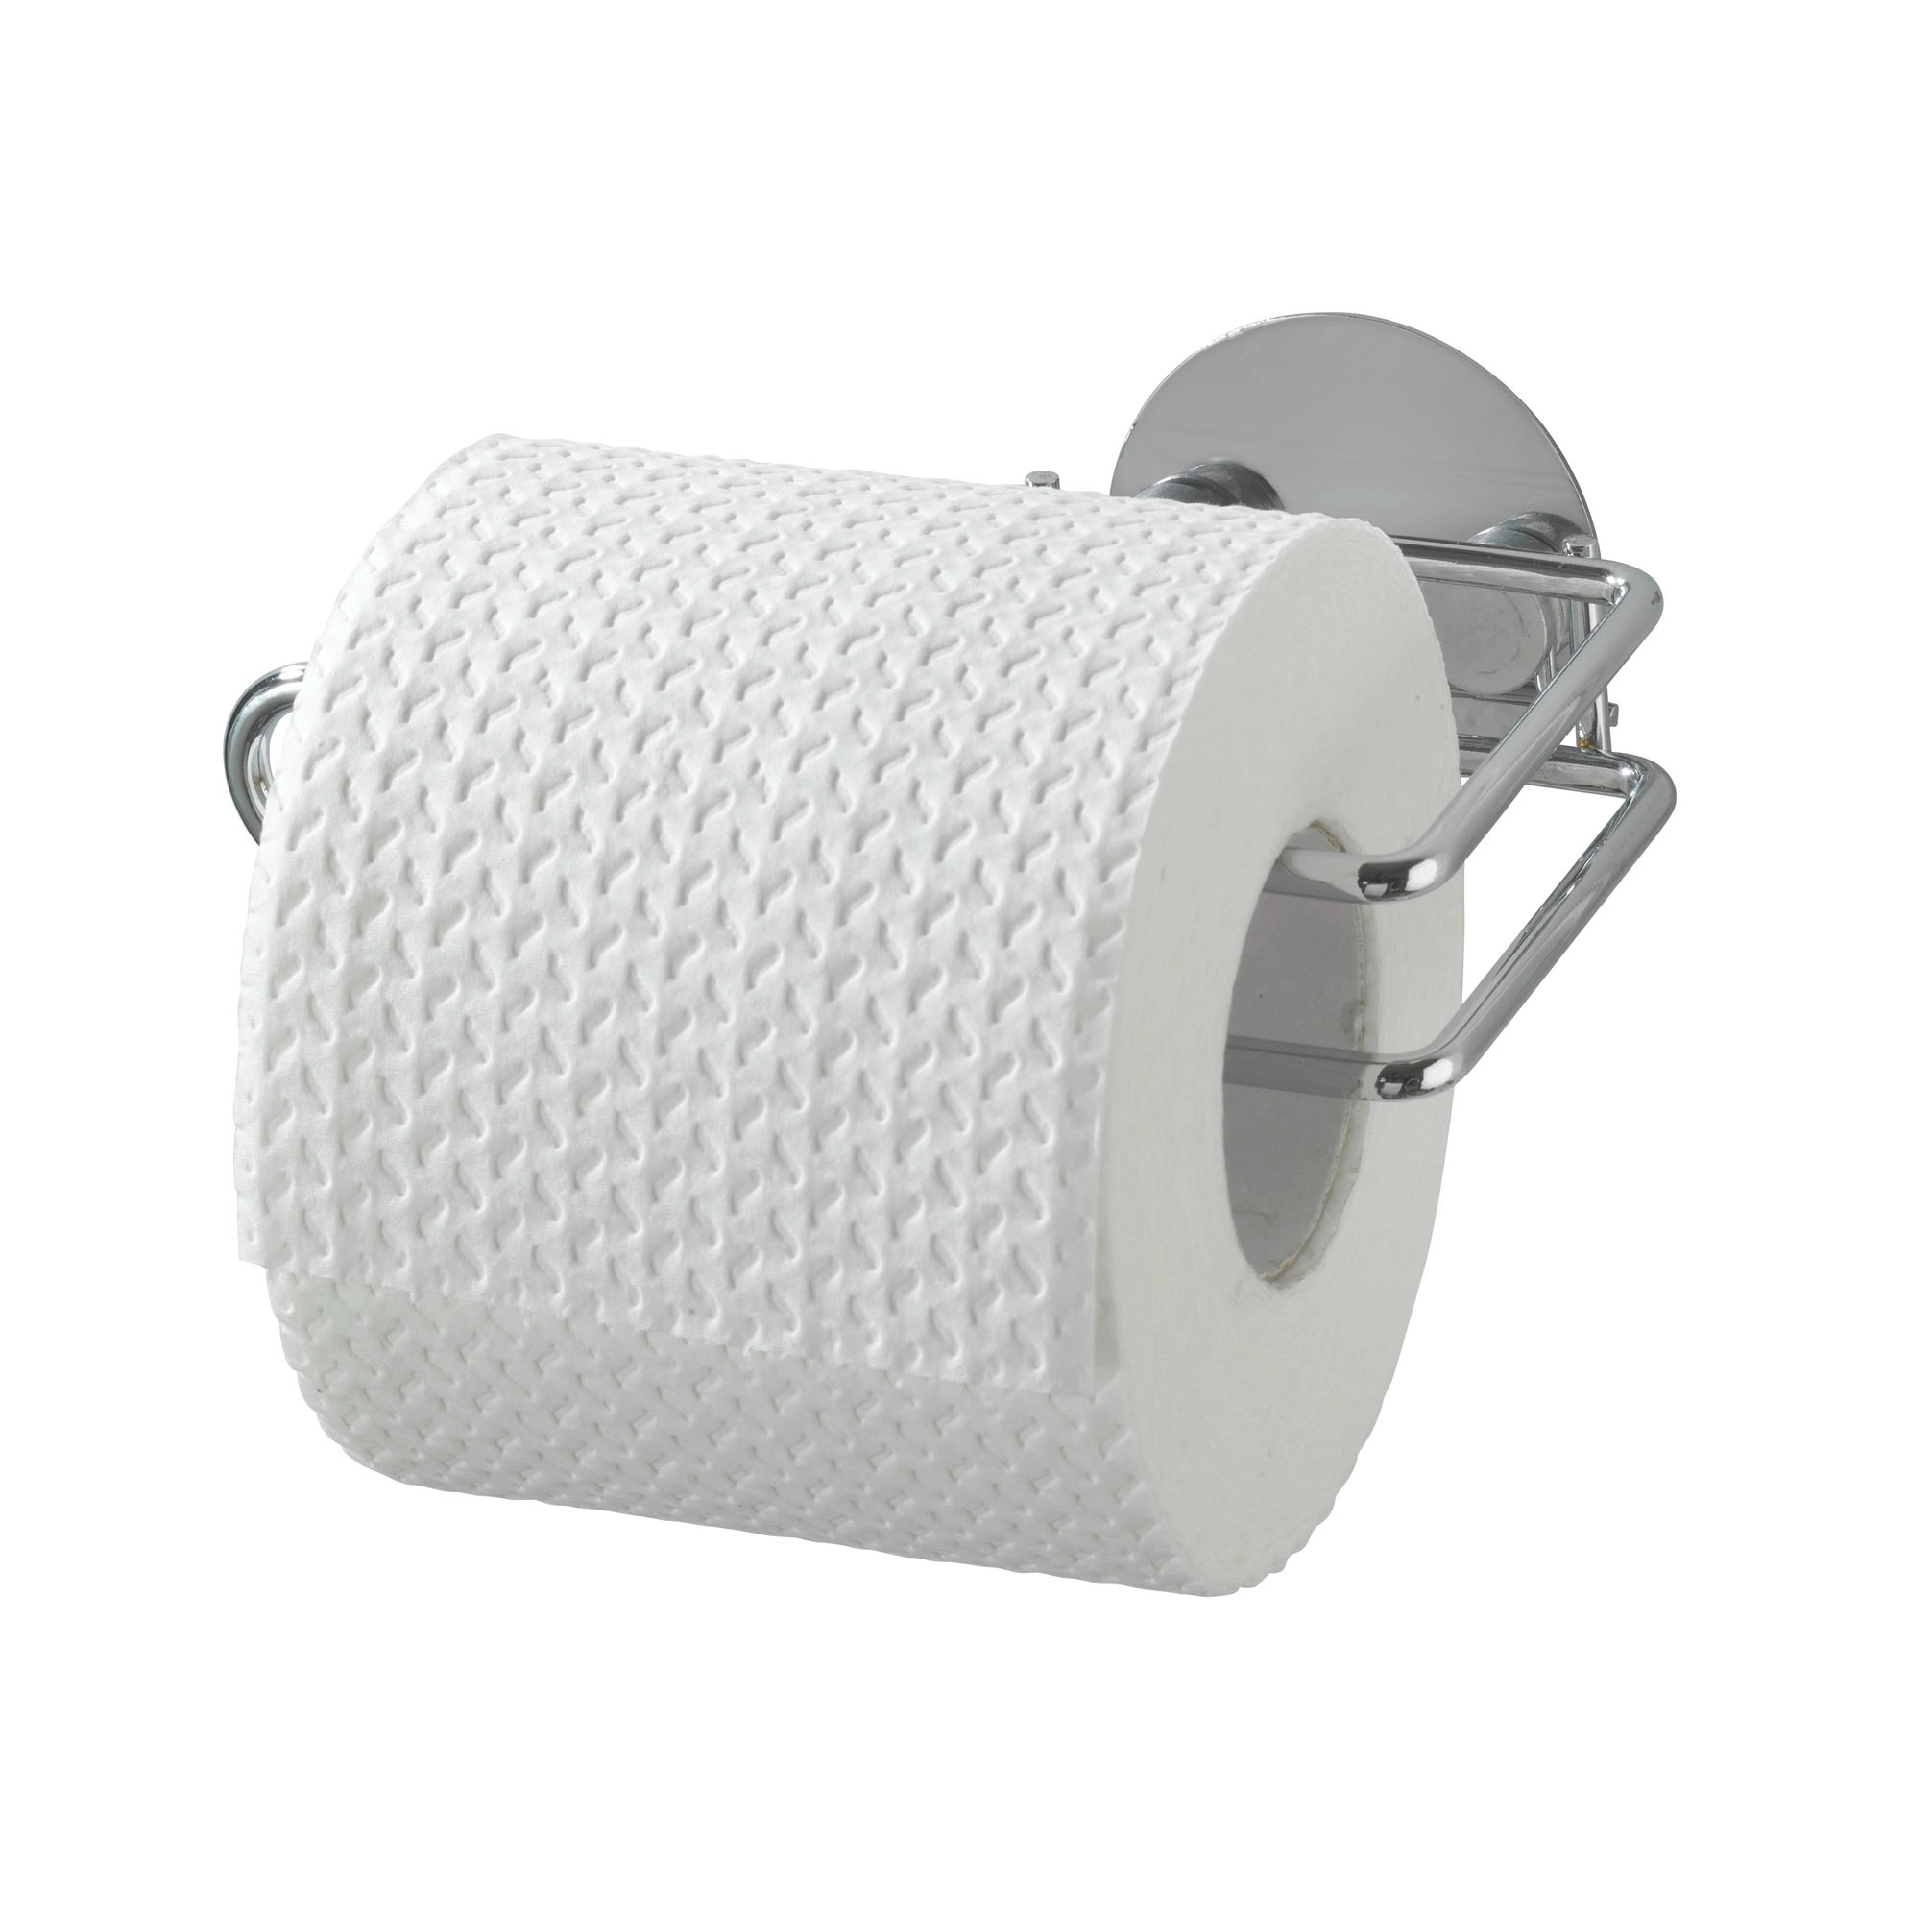 Wenko toilettenpapierhalter kaufen bei OBI